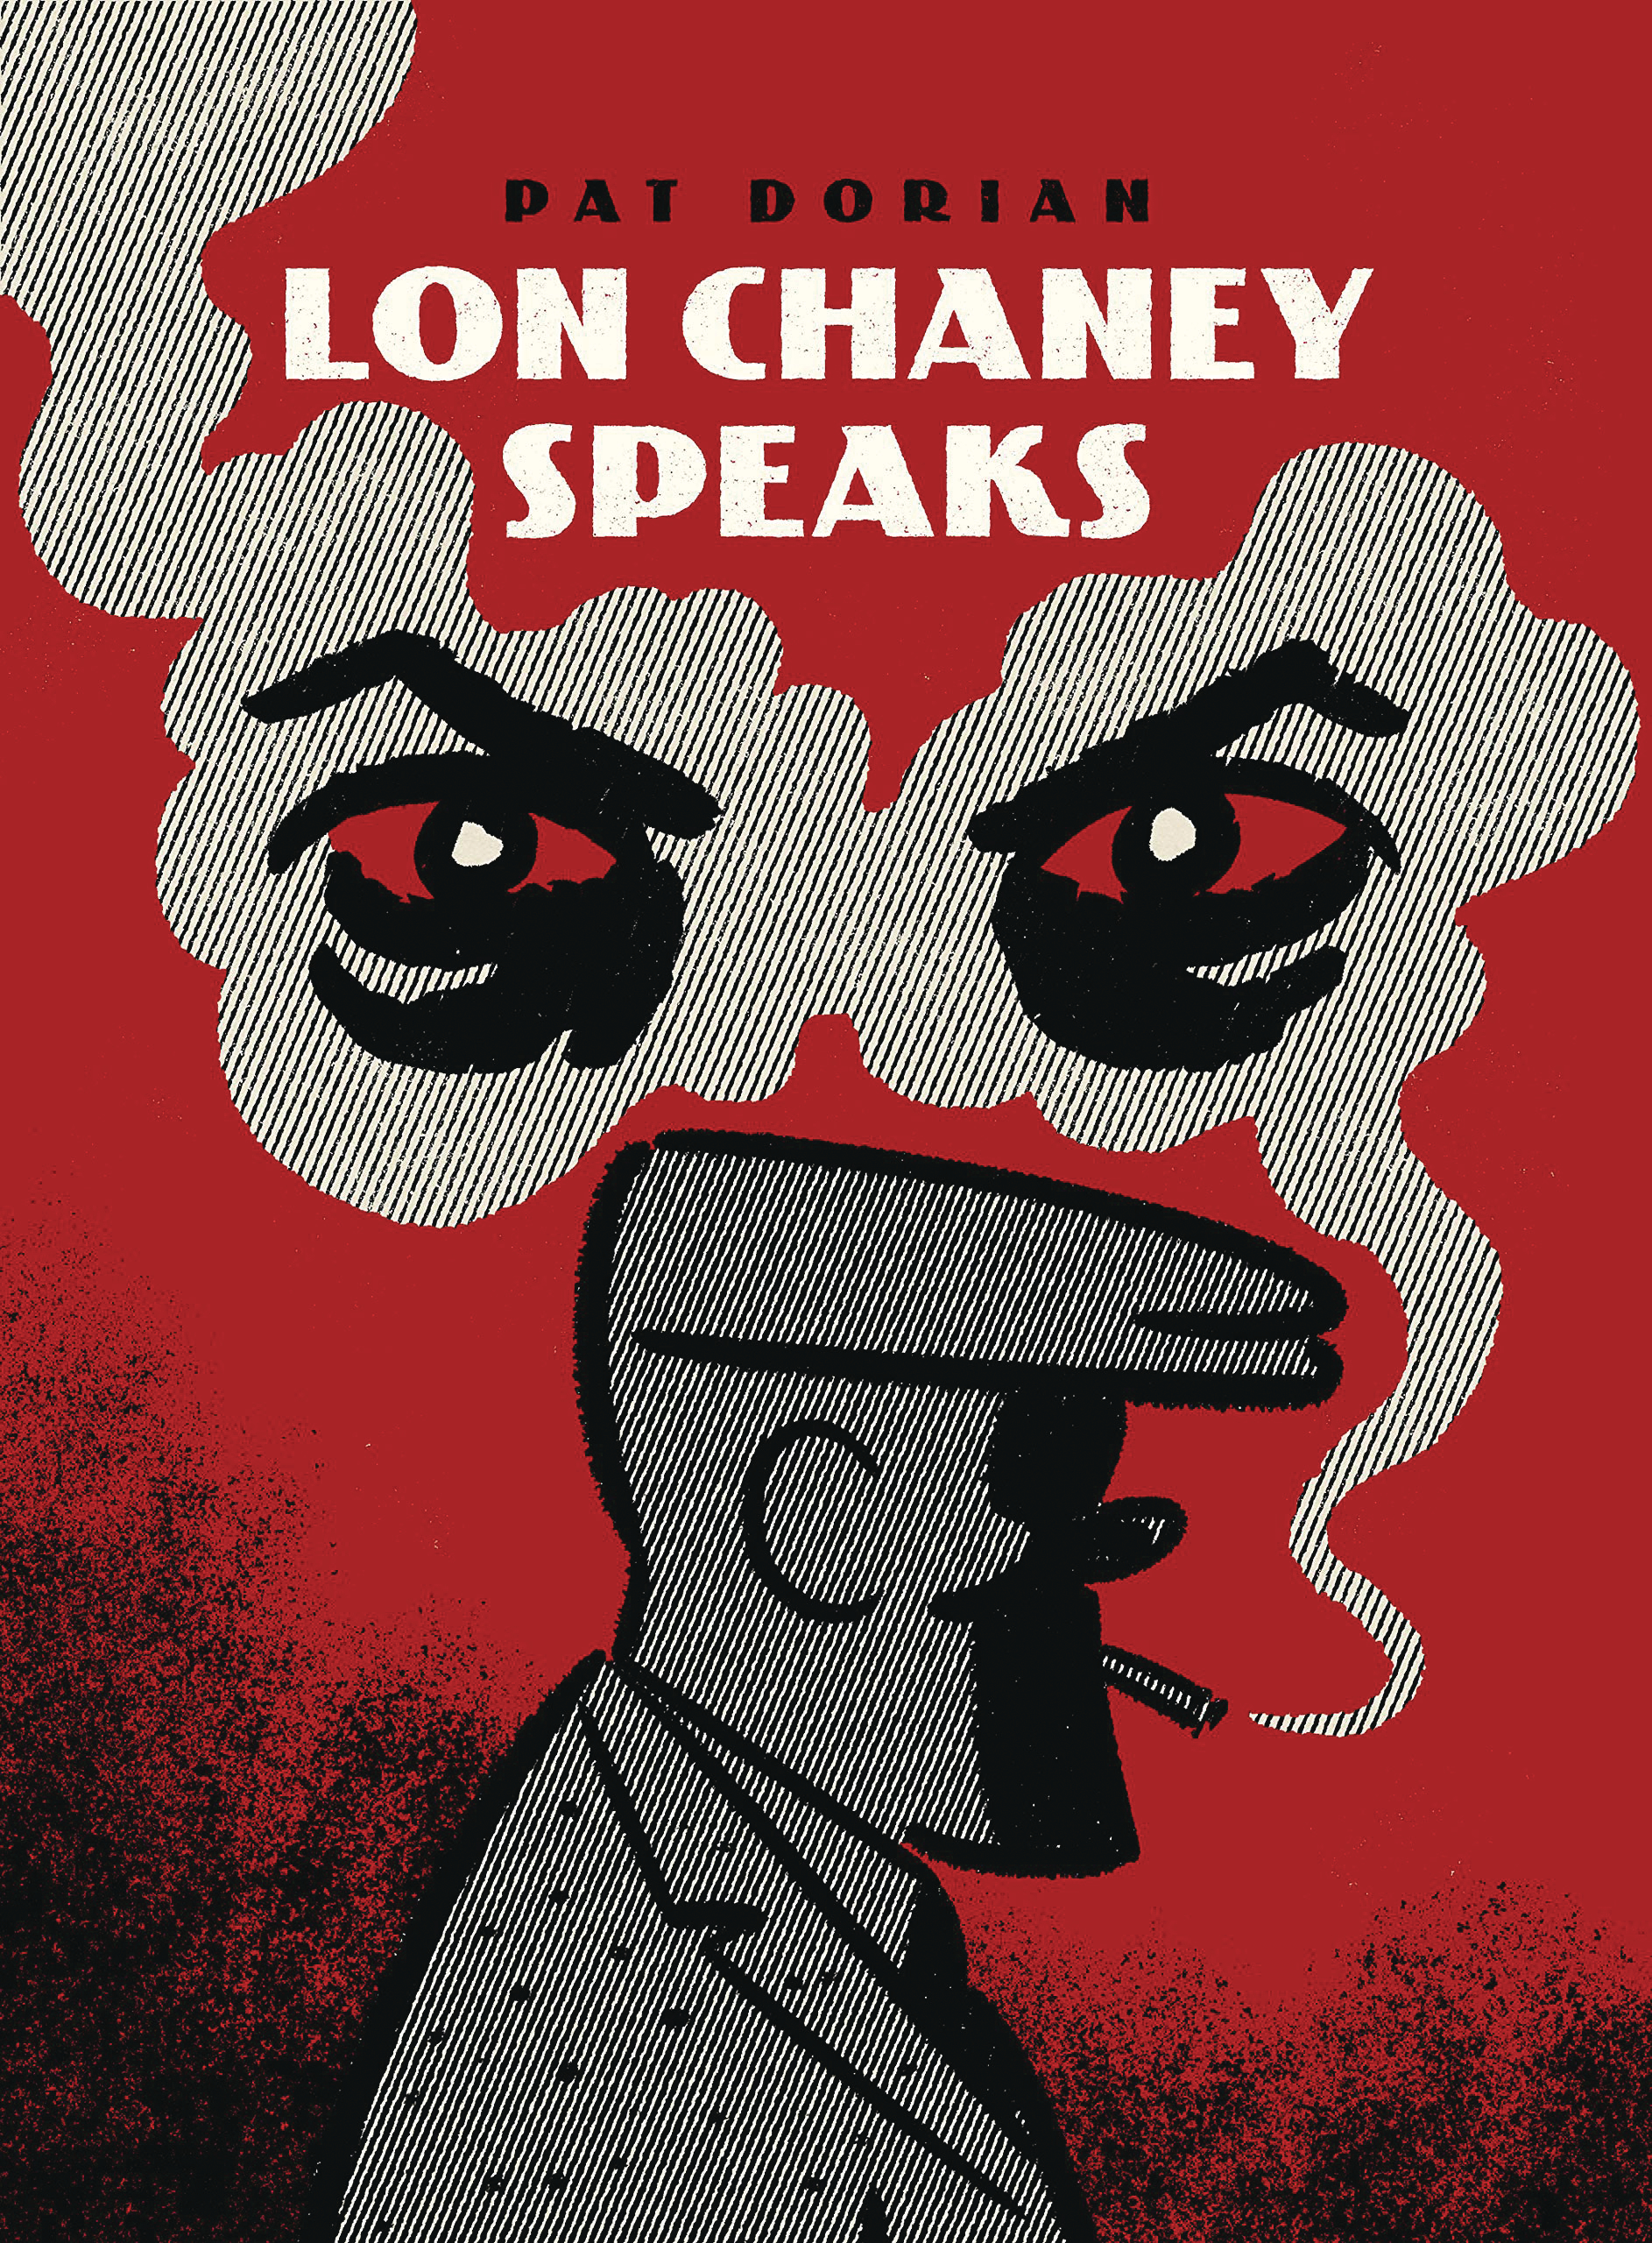 Lon Chaney Speaks Graphic Novel